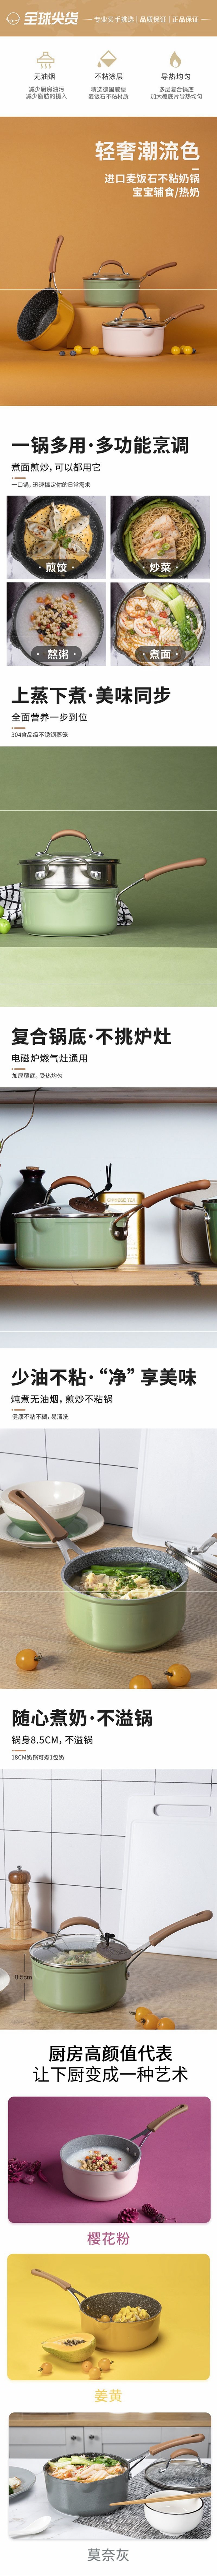 网易严选多色可选多功能锅 一锅多用轻松烹饪 奶锅 (黄色)18cm